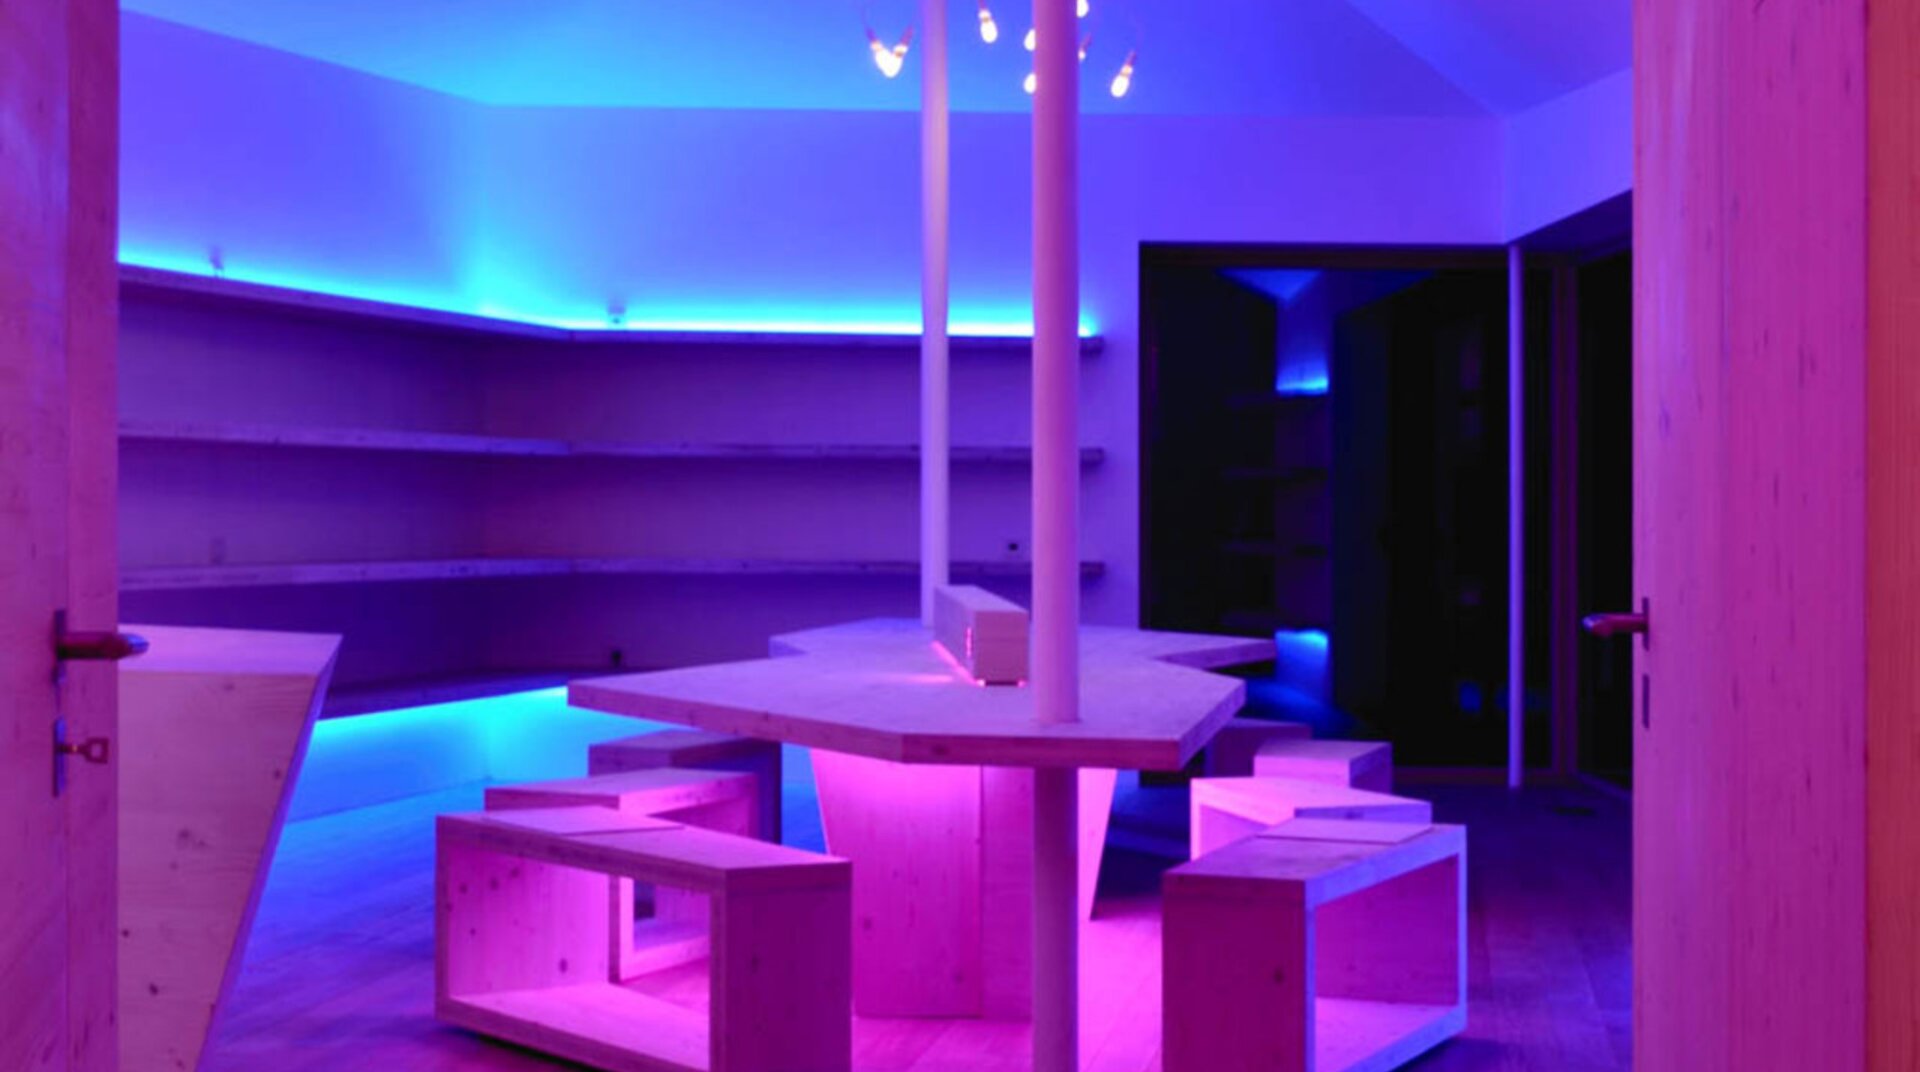 Passivhaus eco, Wohnraum in lilafarbenen Licht